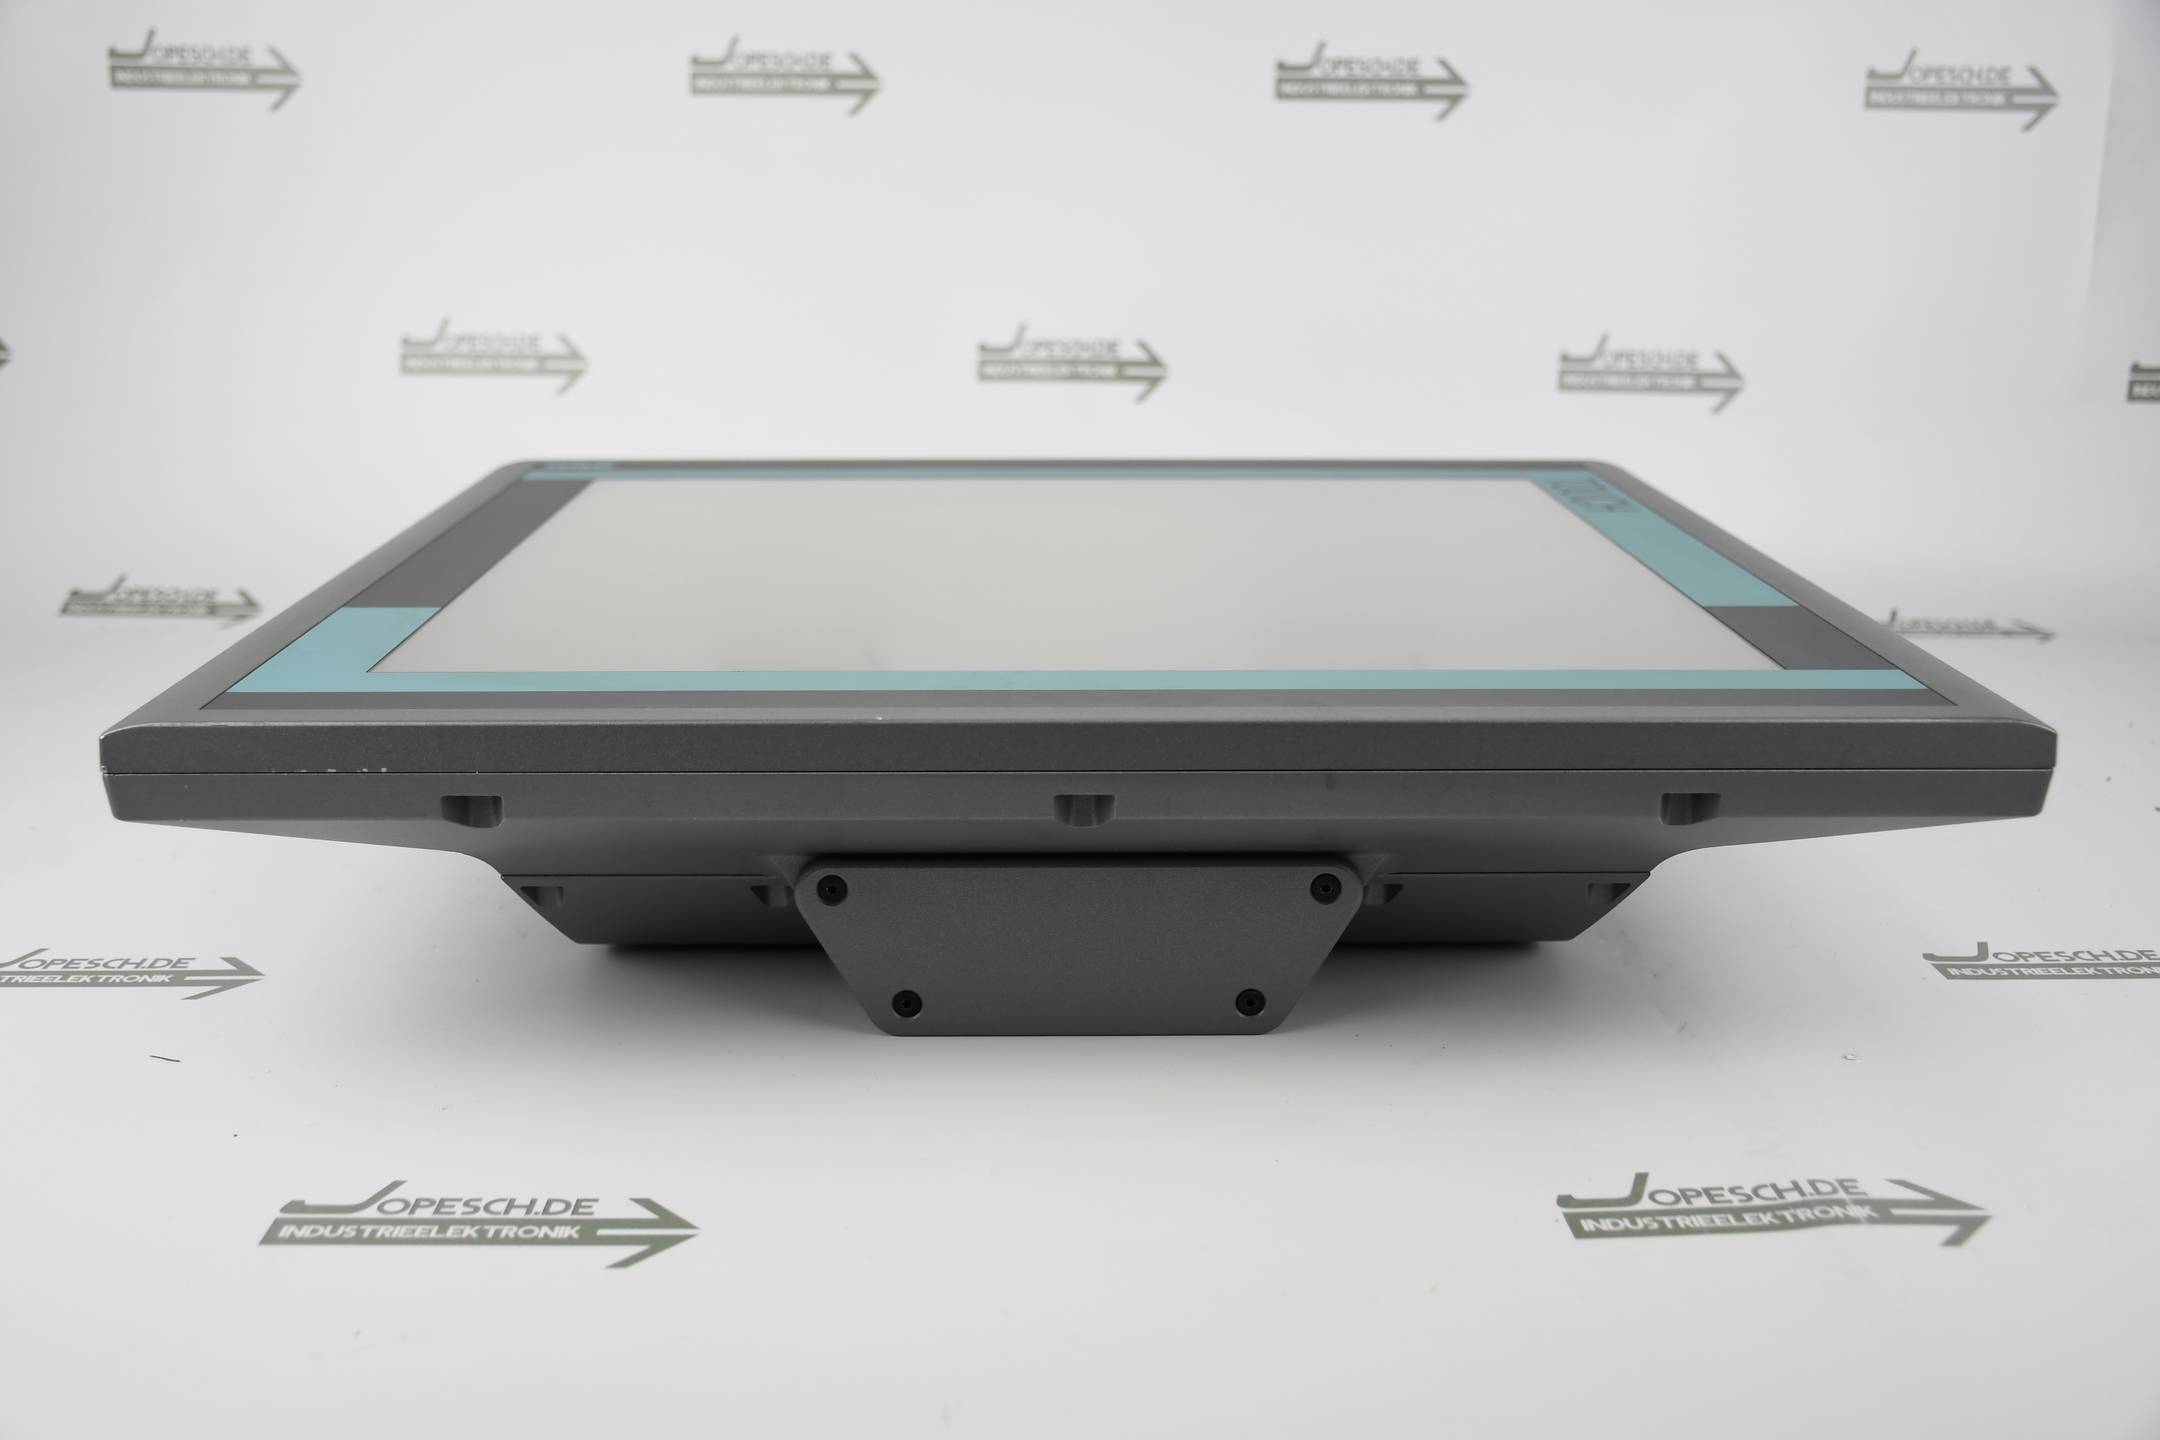 Siemens simatic Flat panel Pro Touch 6AV7861-6TB10-1AA0 ( 6AV7 861-6TB10-1AA0 )